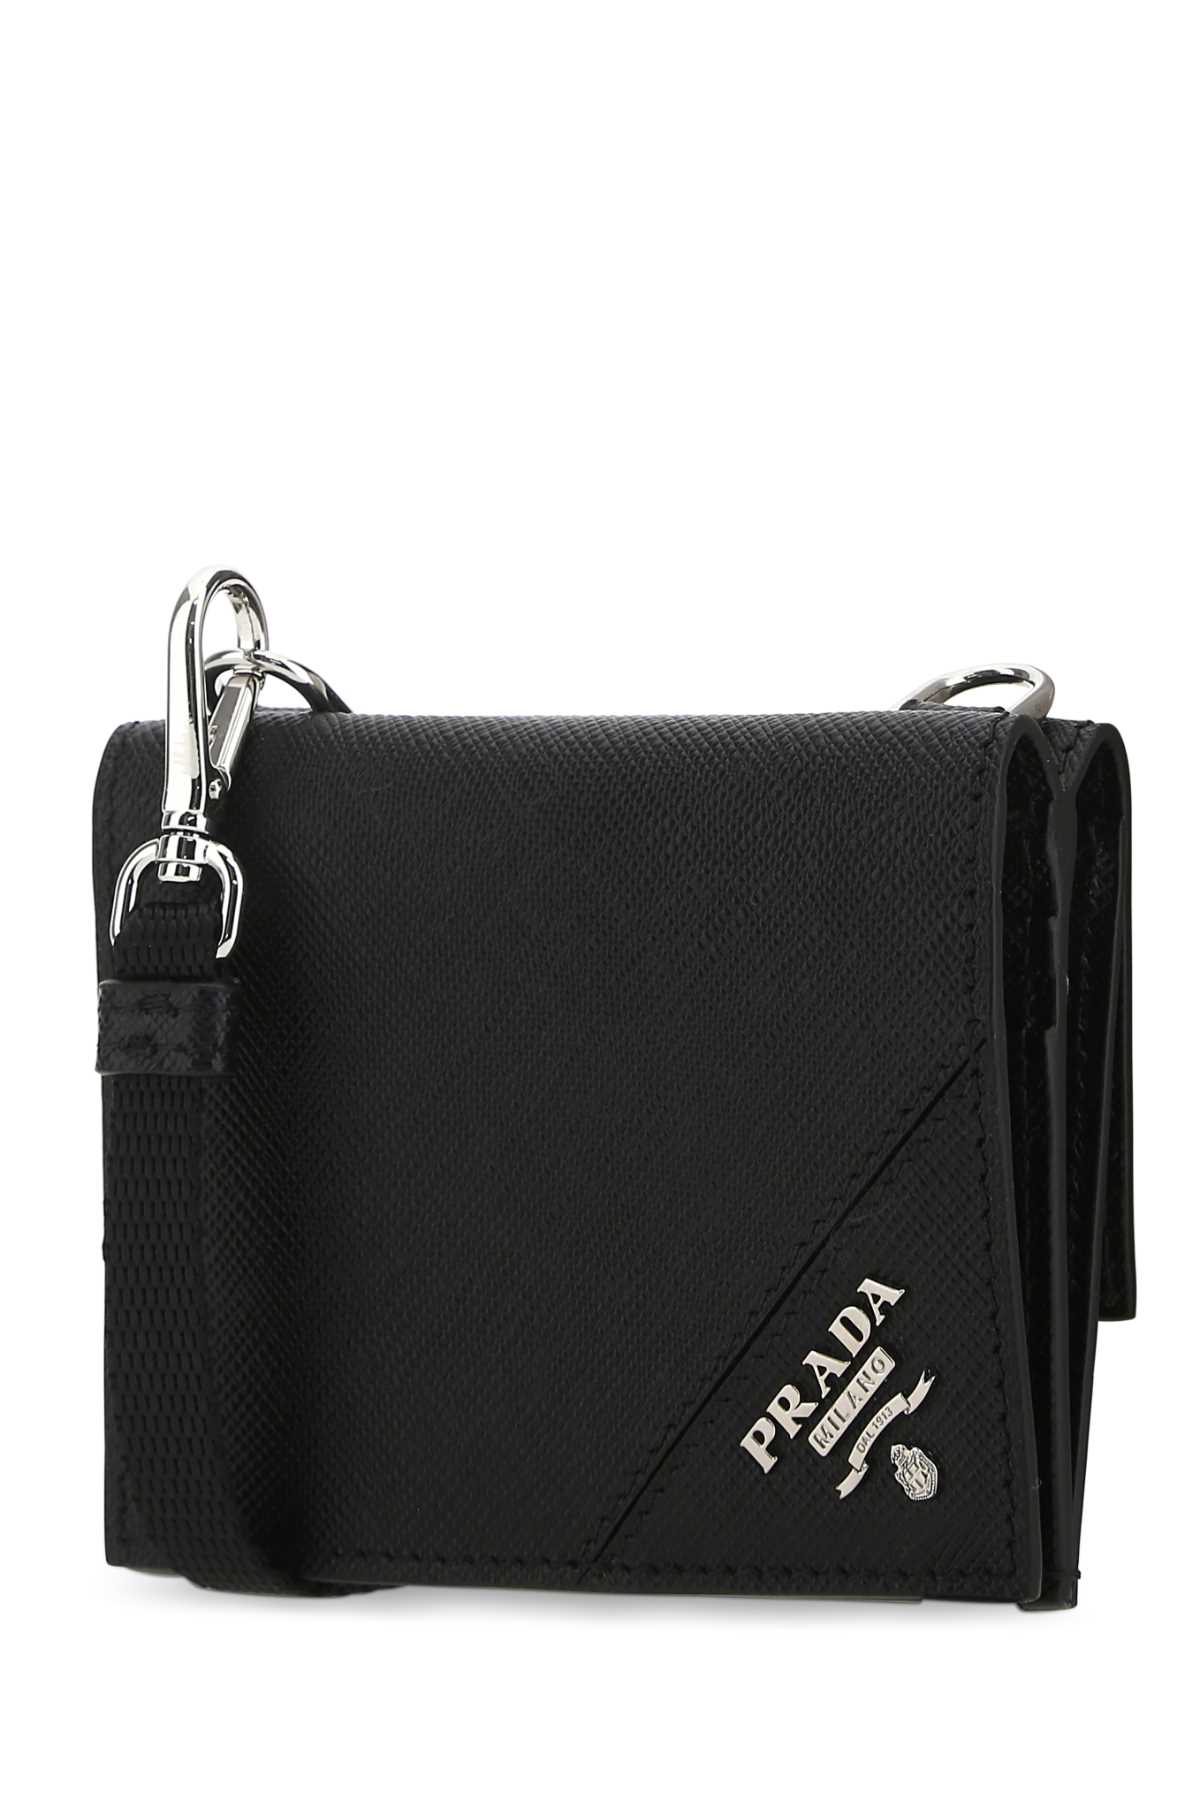 Shop Prada Black Leather Cardholder In F0002